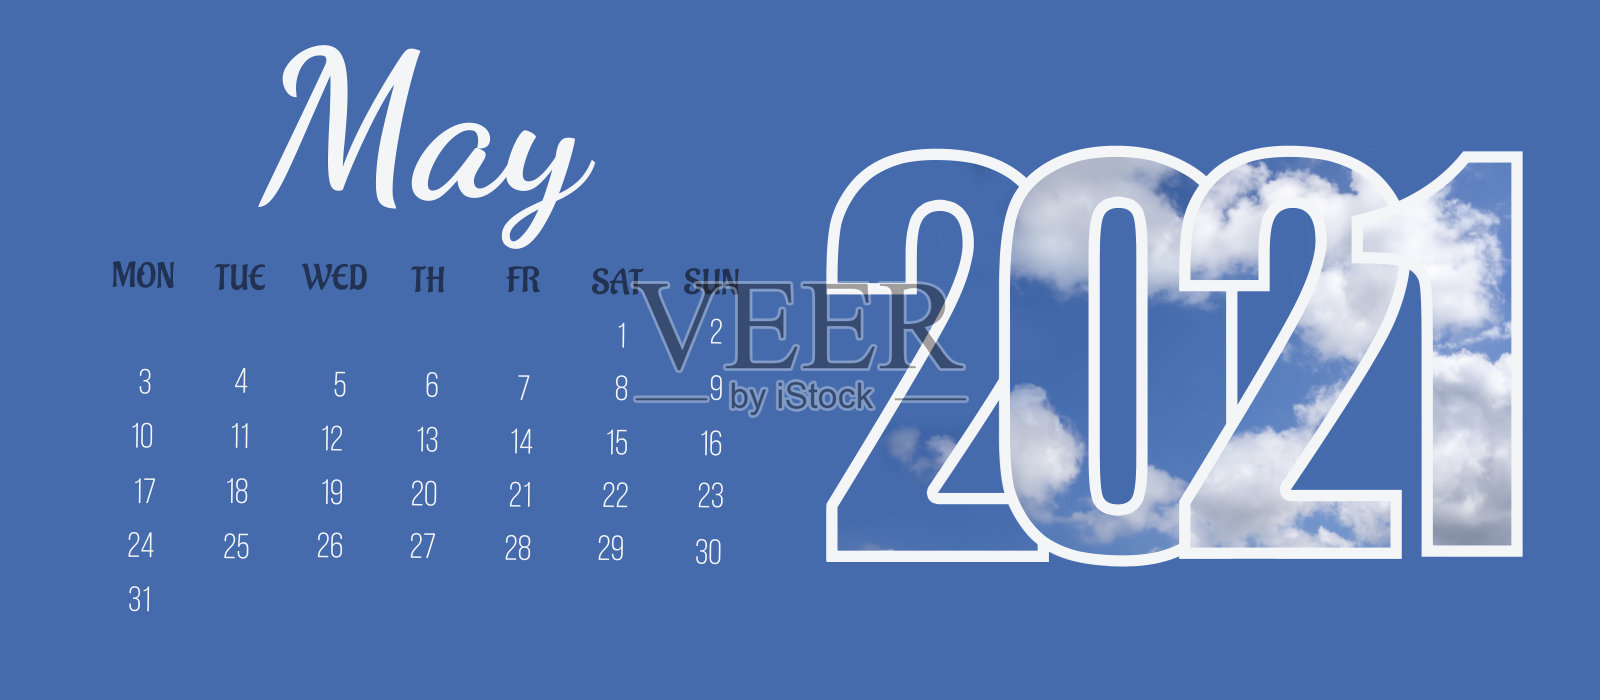 全月日历页:2021年5月。月的名称，星期的天数，天数的数字和年在蓝色固体背景上。日历日期的概念设计模板素材